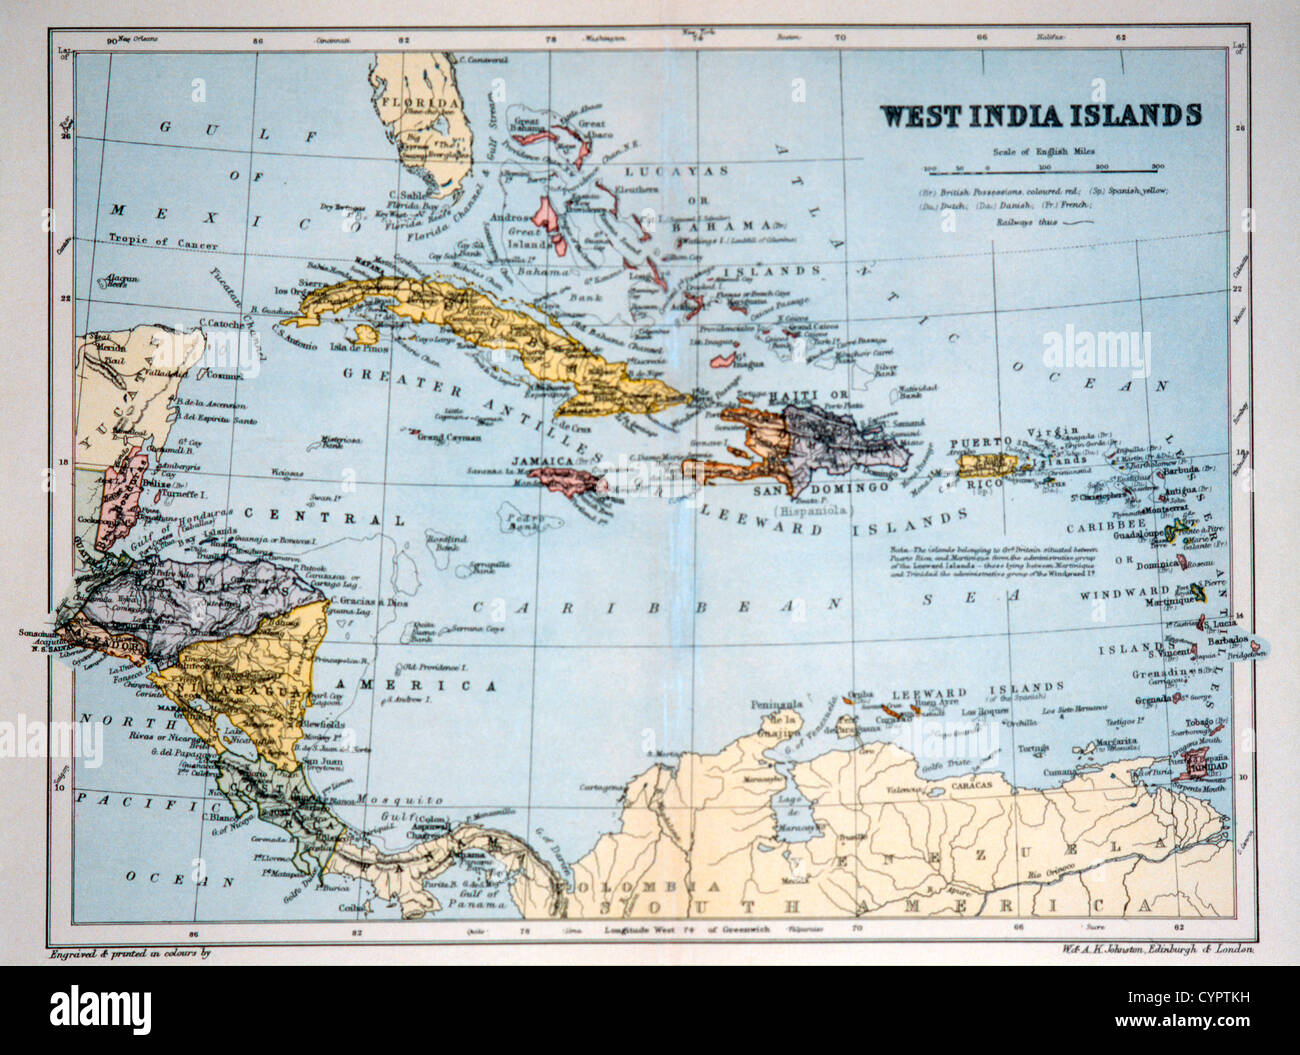 West Indien Inseln, historische Karte, ca. 1893 Stockfoto